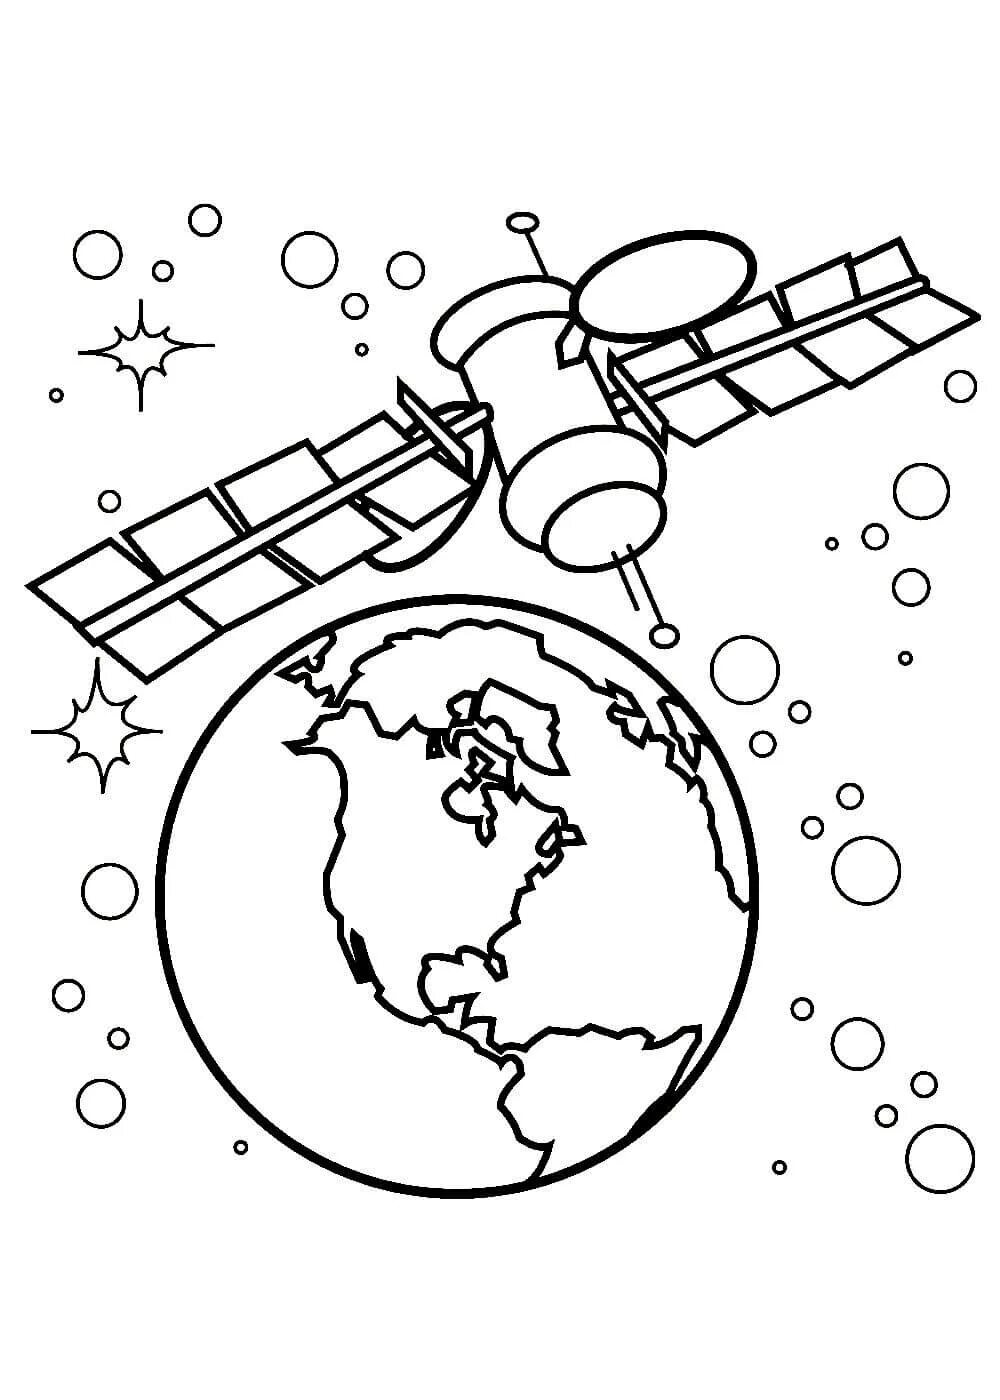 Рисунок ко дню космонавтики черно белый. Раскраска. В космосе. Космос раскраска для детей. Раскраски ко Дню космонавтики. Раскраска на тему космос для детей.